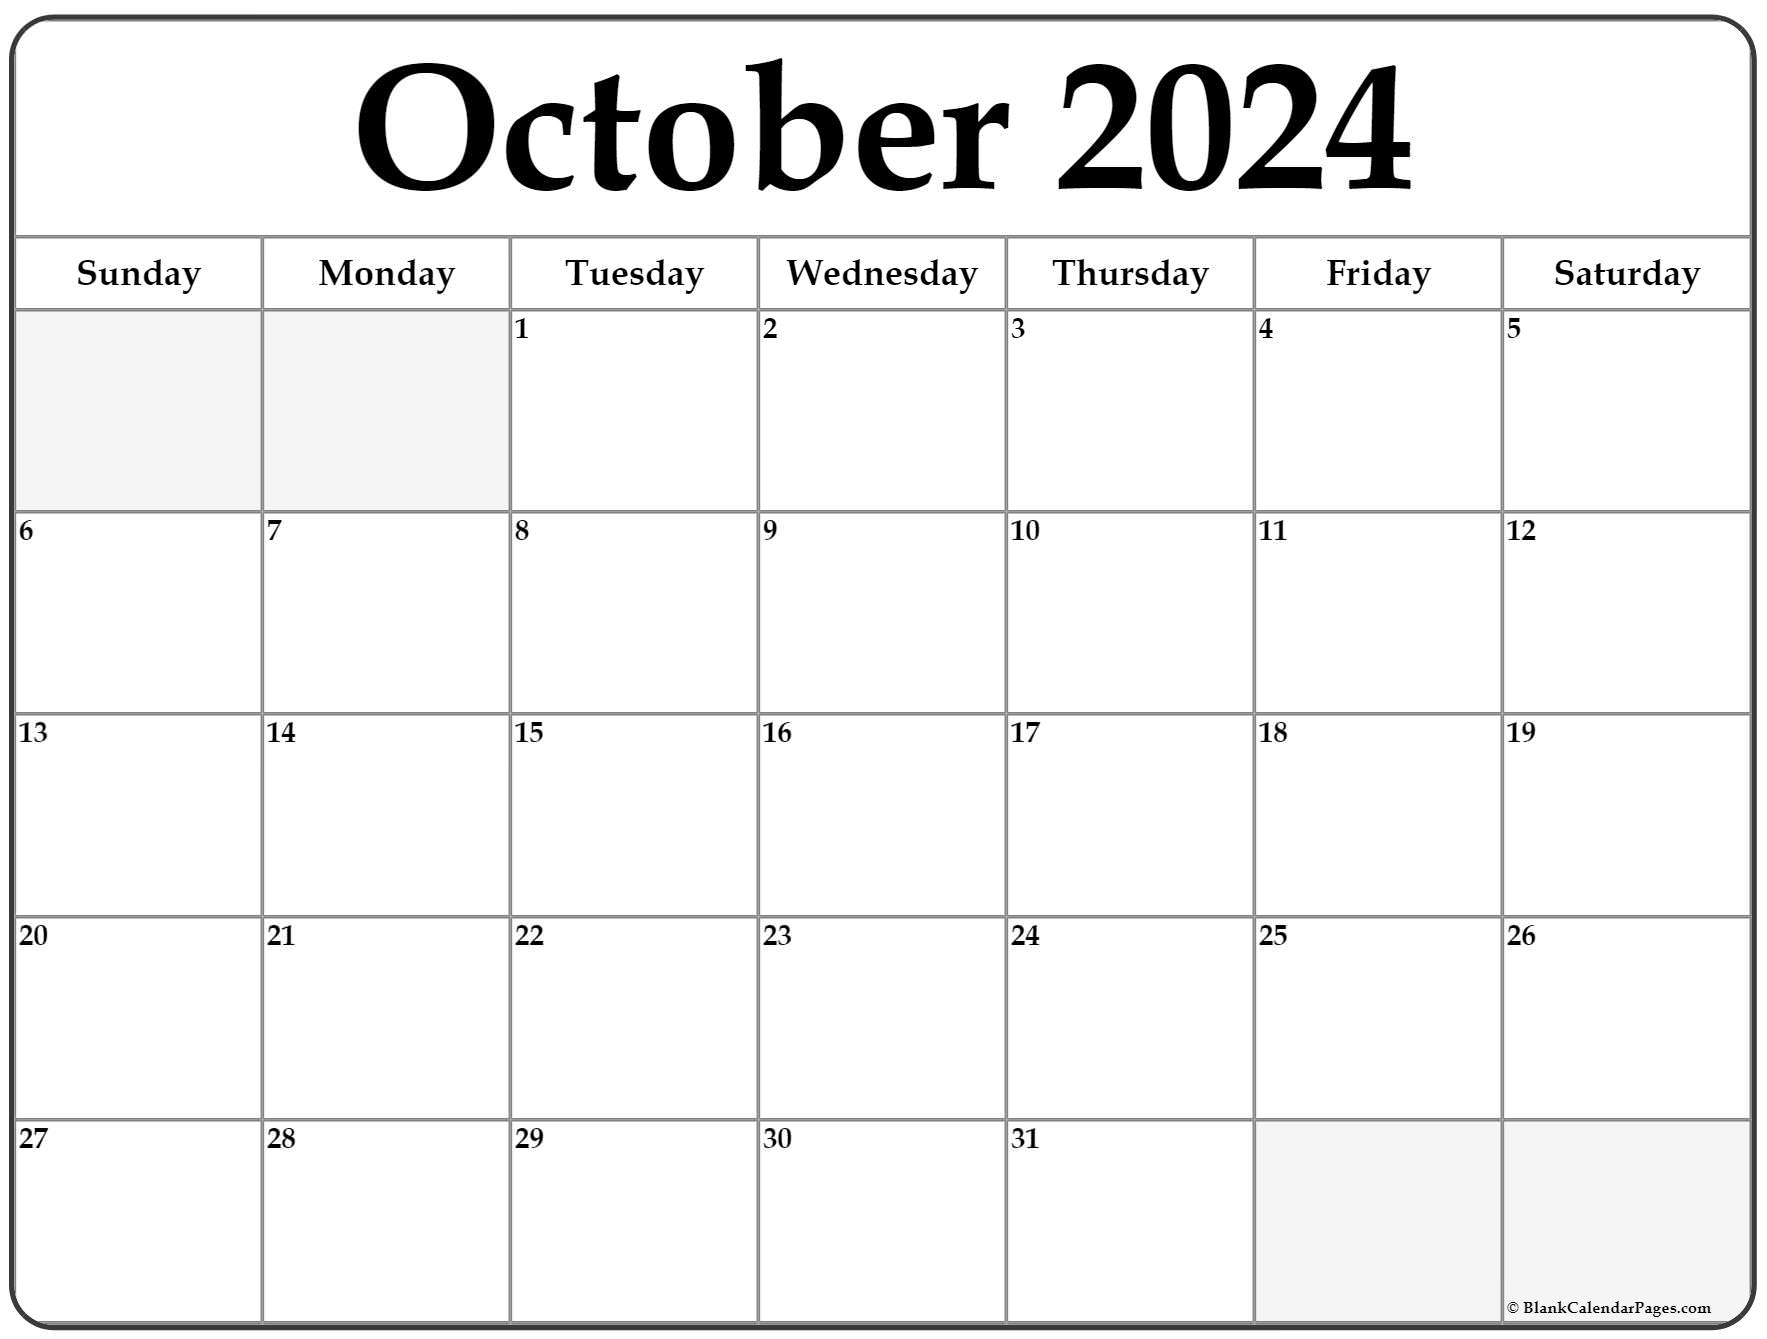 October 2022 calendar free printable calendar templates